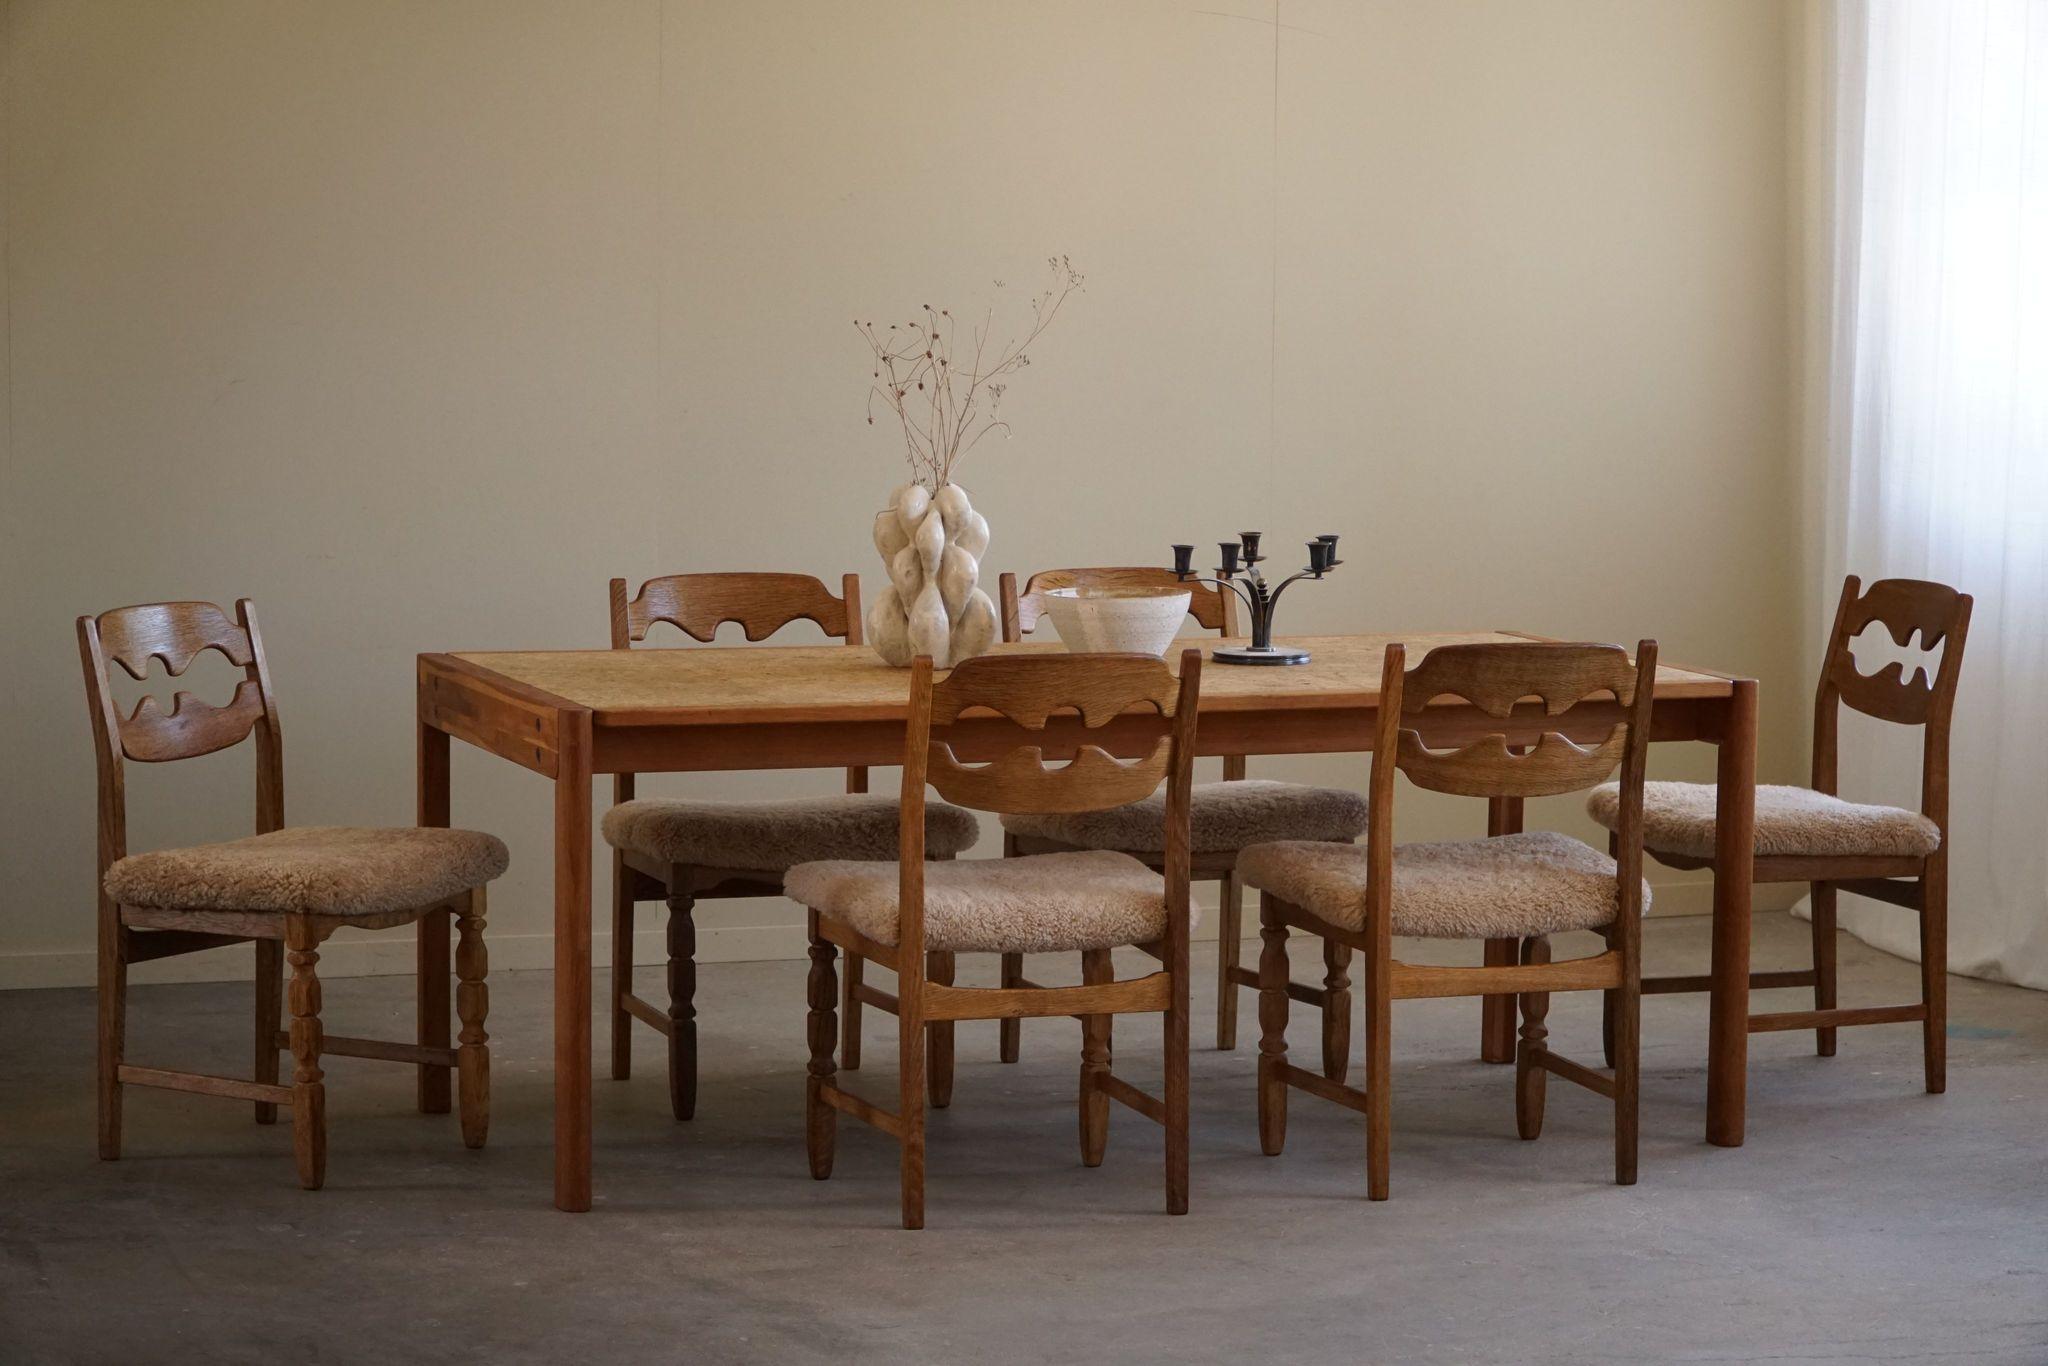 Cette table de salle à manger rectangulaire est un excellent exemple du design danois du milieu du siècle dernier, conçu par Jørgen Bækmark pour FDB dans les années 1960. Fabriqué avec une attention méticuleuse aux détails, il marie la chaleur du